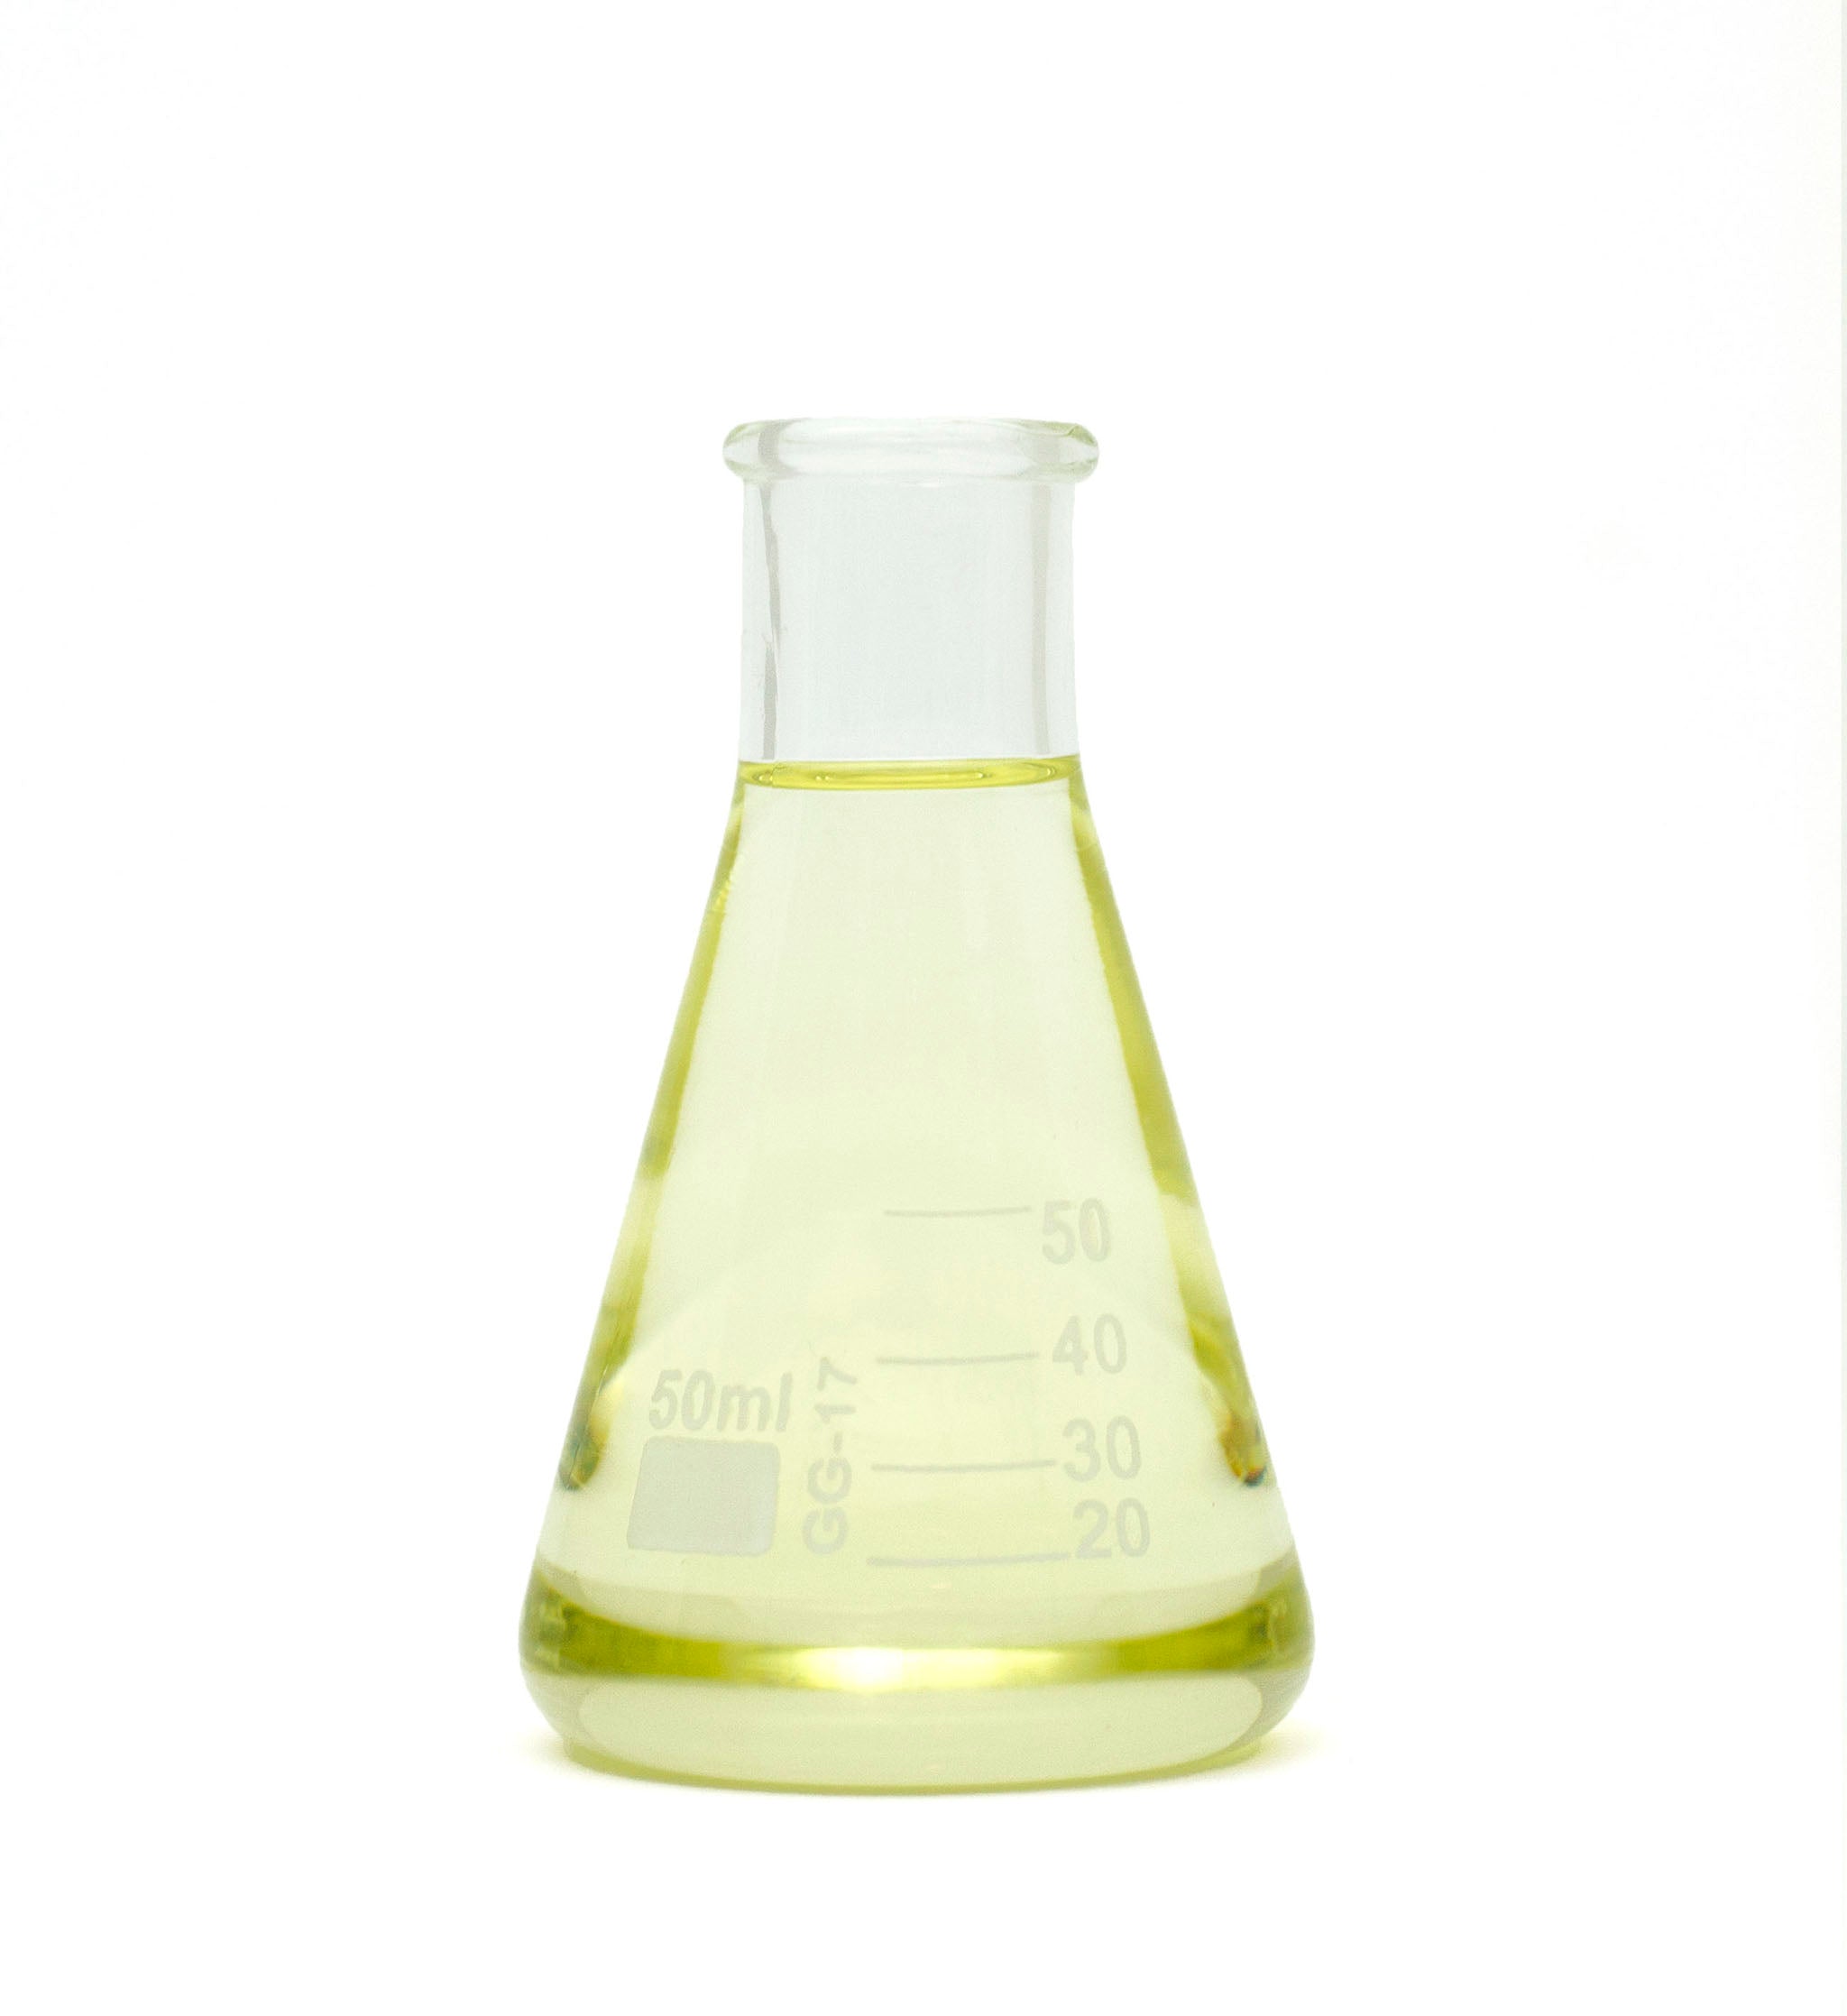 lavandin essential oil in beaker